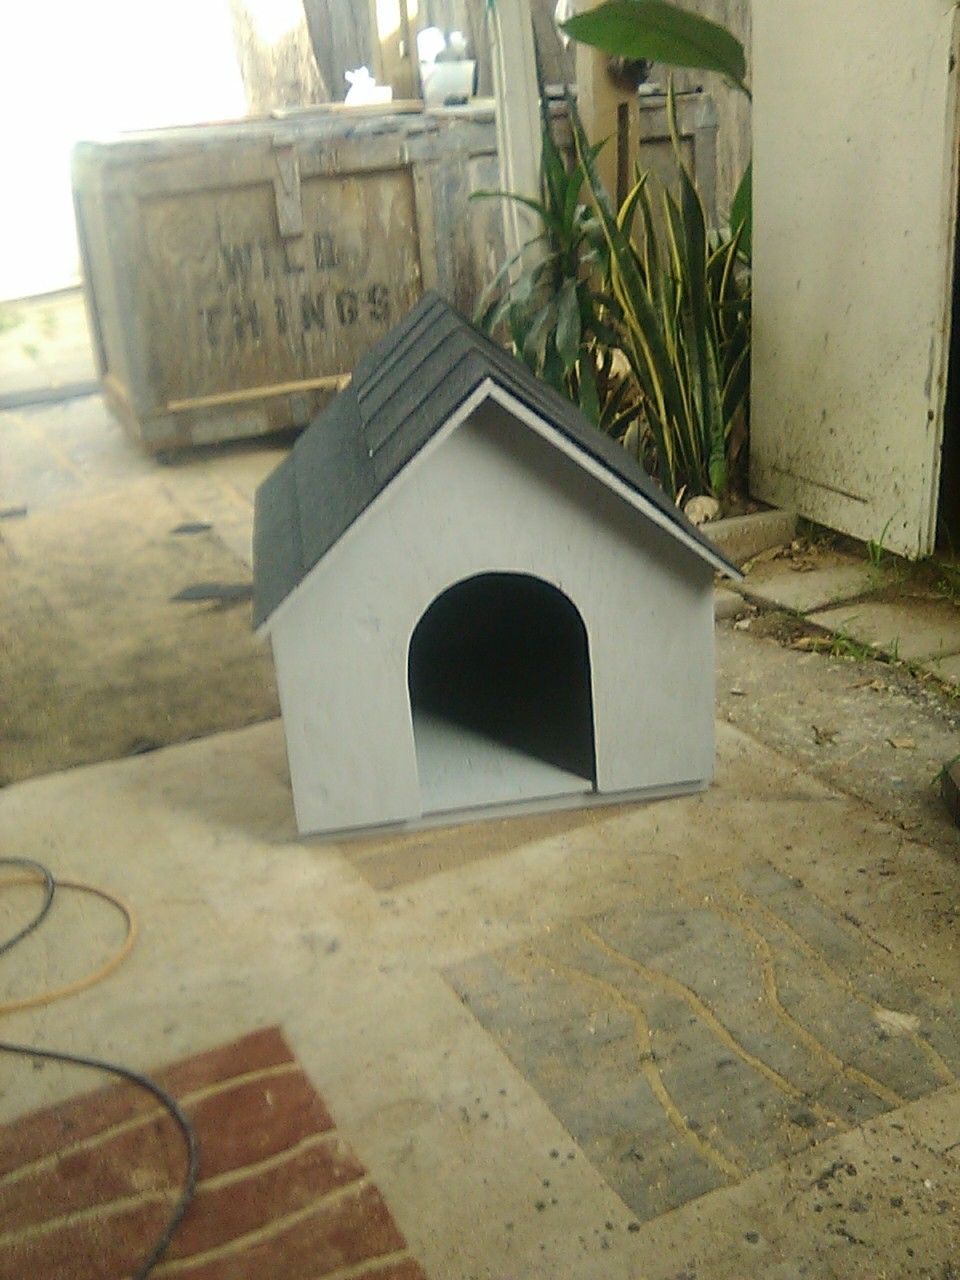 New wood dog house